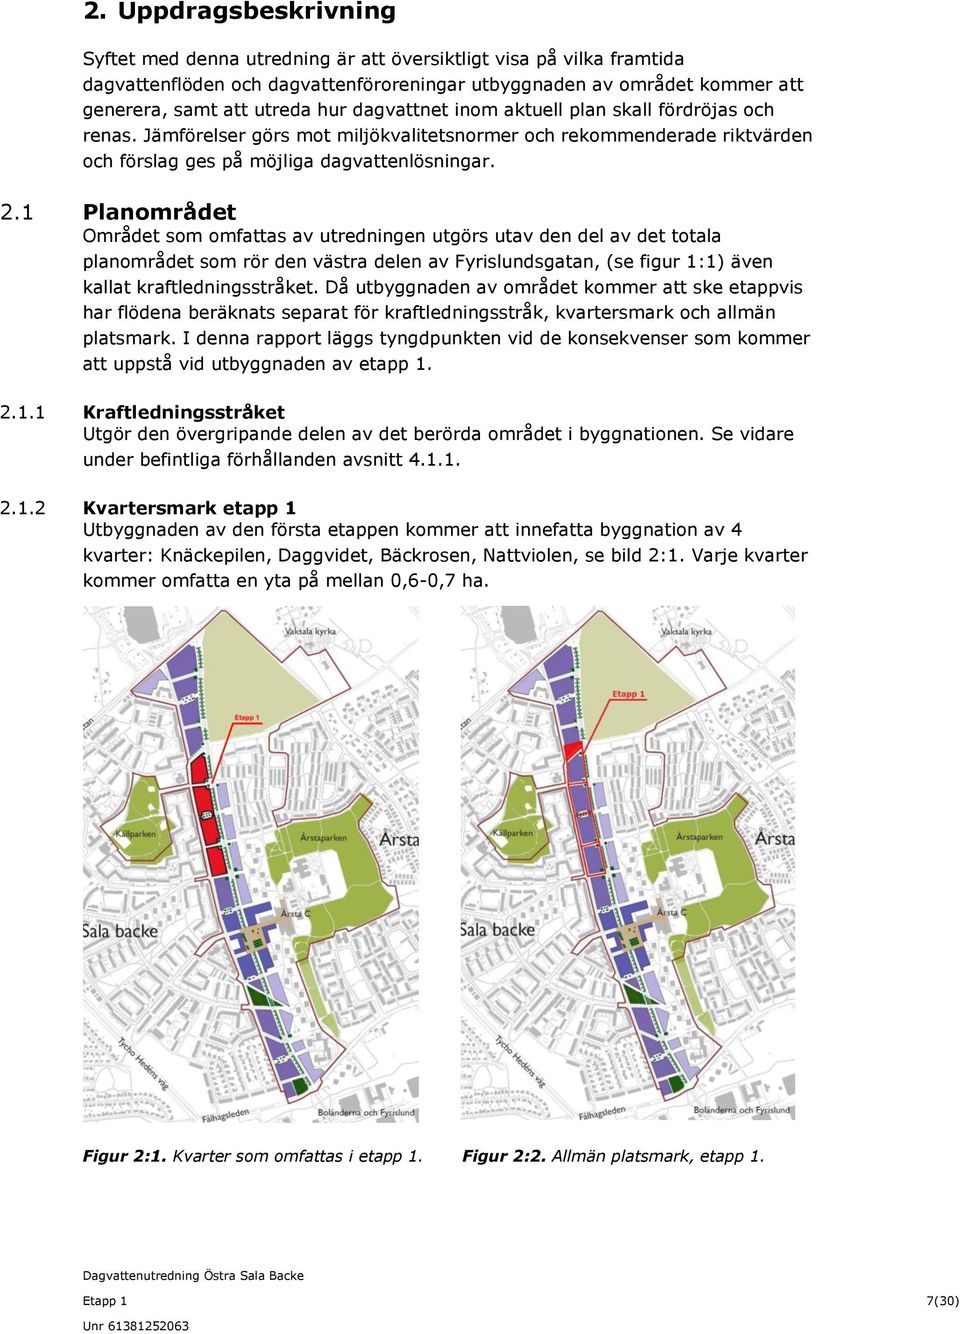 1 Planområdet Området som omfattas av utredningen utgörs utav den del av det totala planområdet som rör den västra delen av Fyrislundsgatan, (se figur 1:1) även kallat kraftledningsstråket.